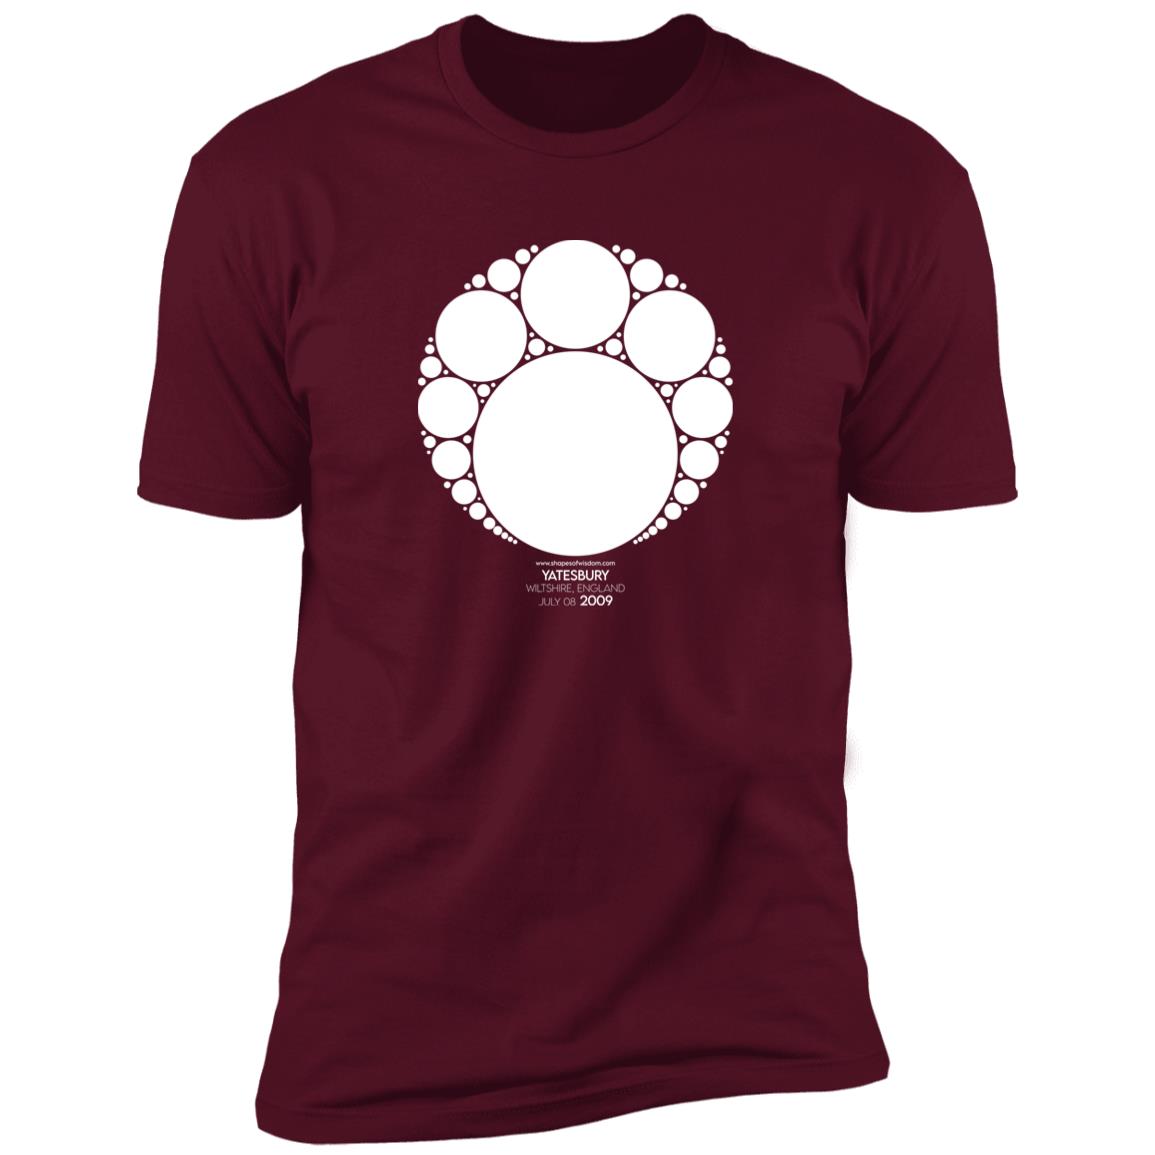 Crop Circle Premium T-Shirt - Yatesbury 6